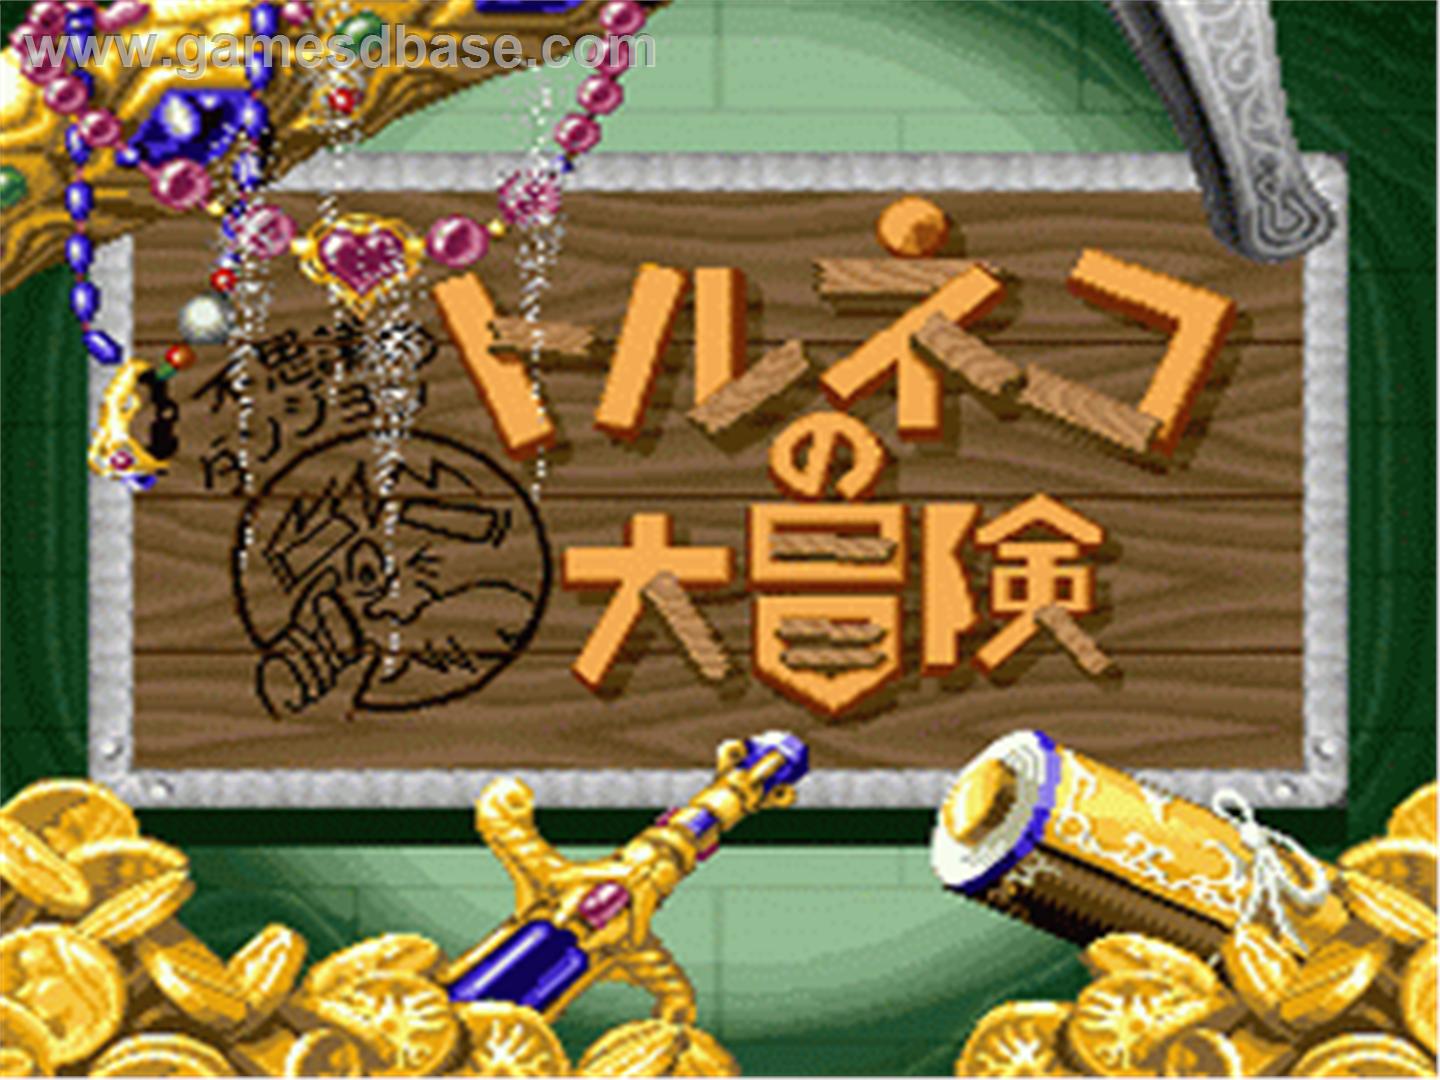 Torneko_no_Daibouken_-_Fushigi_no_Dungeon_-_1993_-_Chunsoft.jpg